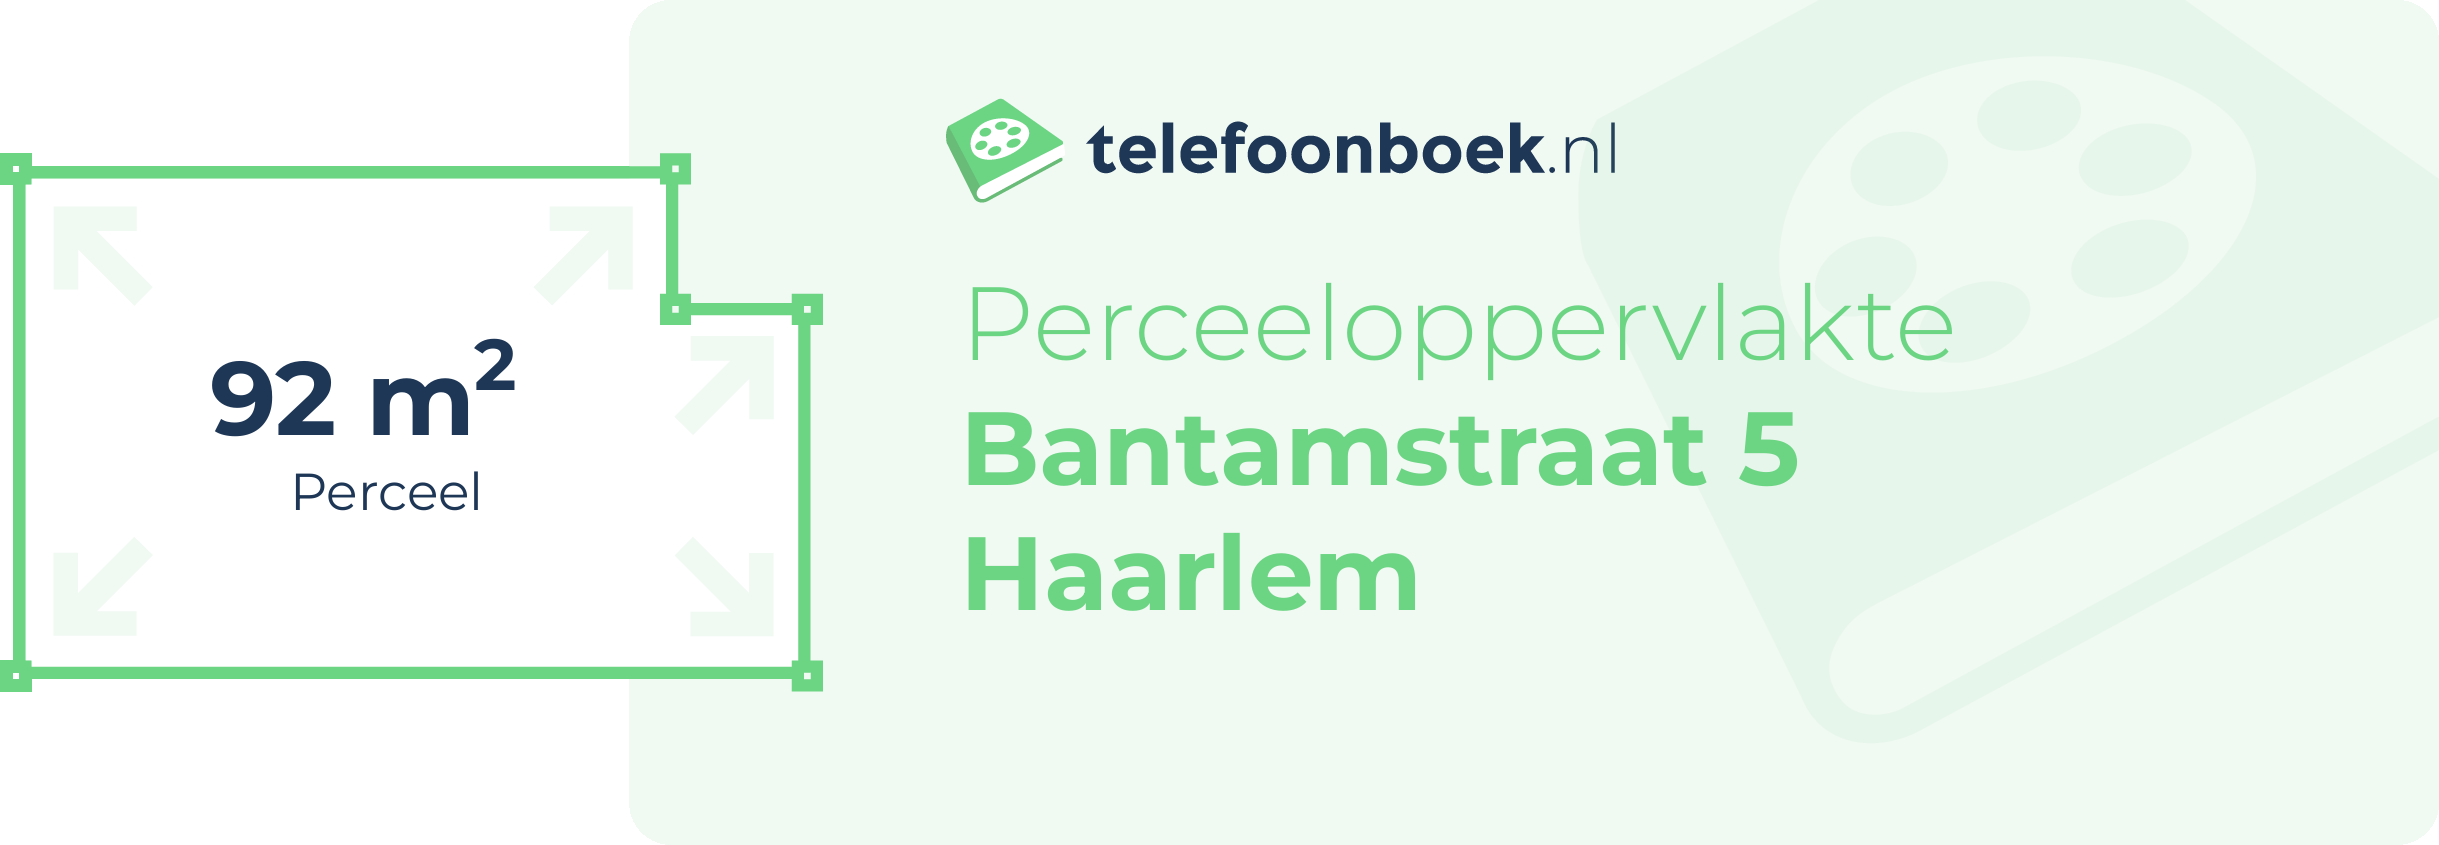 Perceeloppervlakte Bantamstraat 5 Haarlem